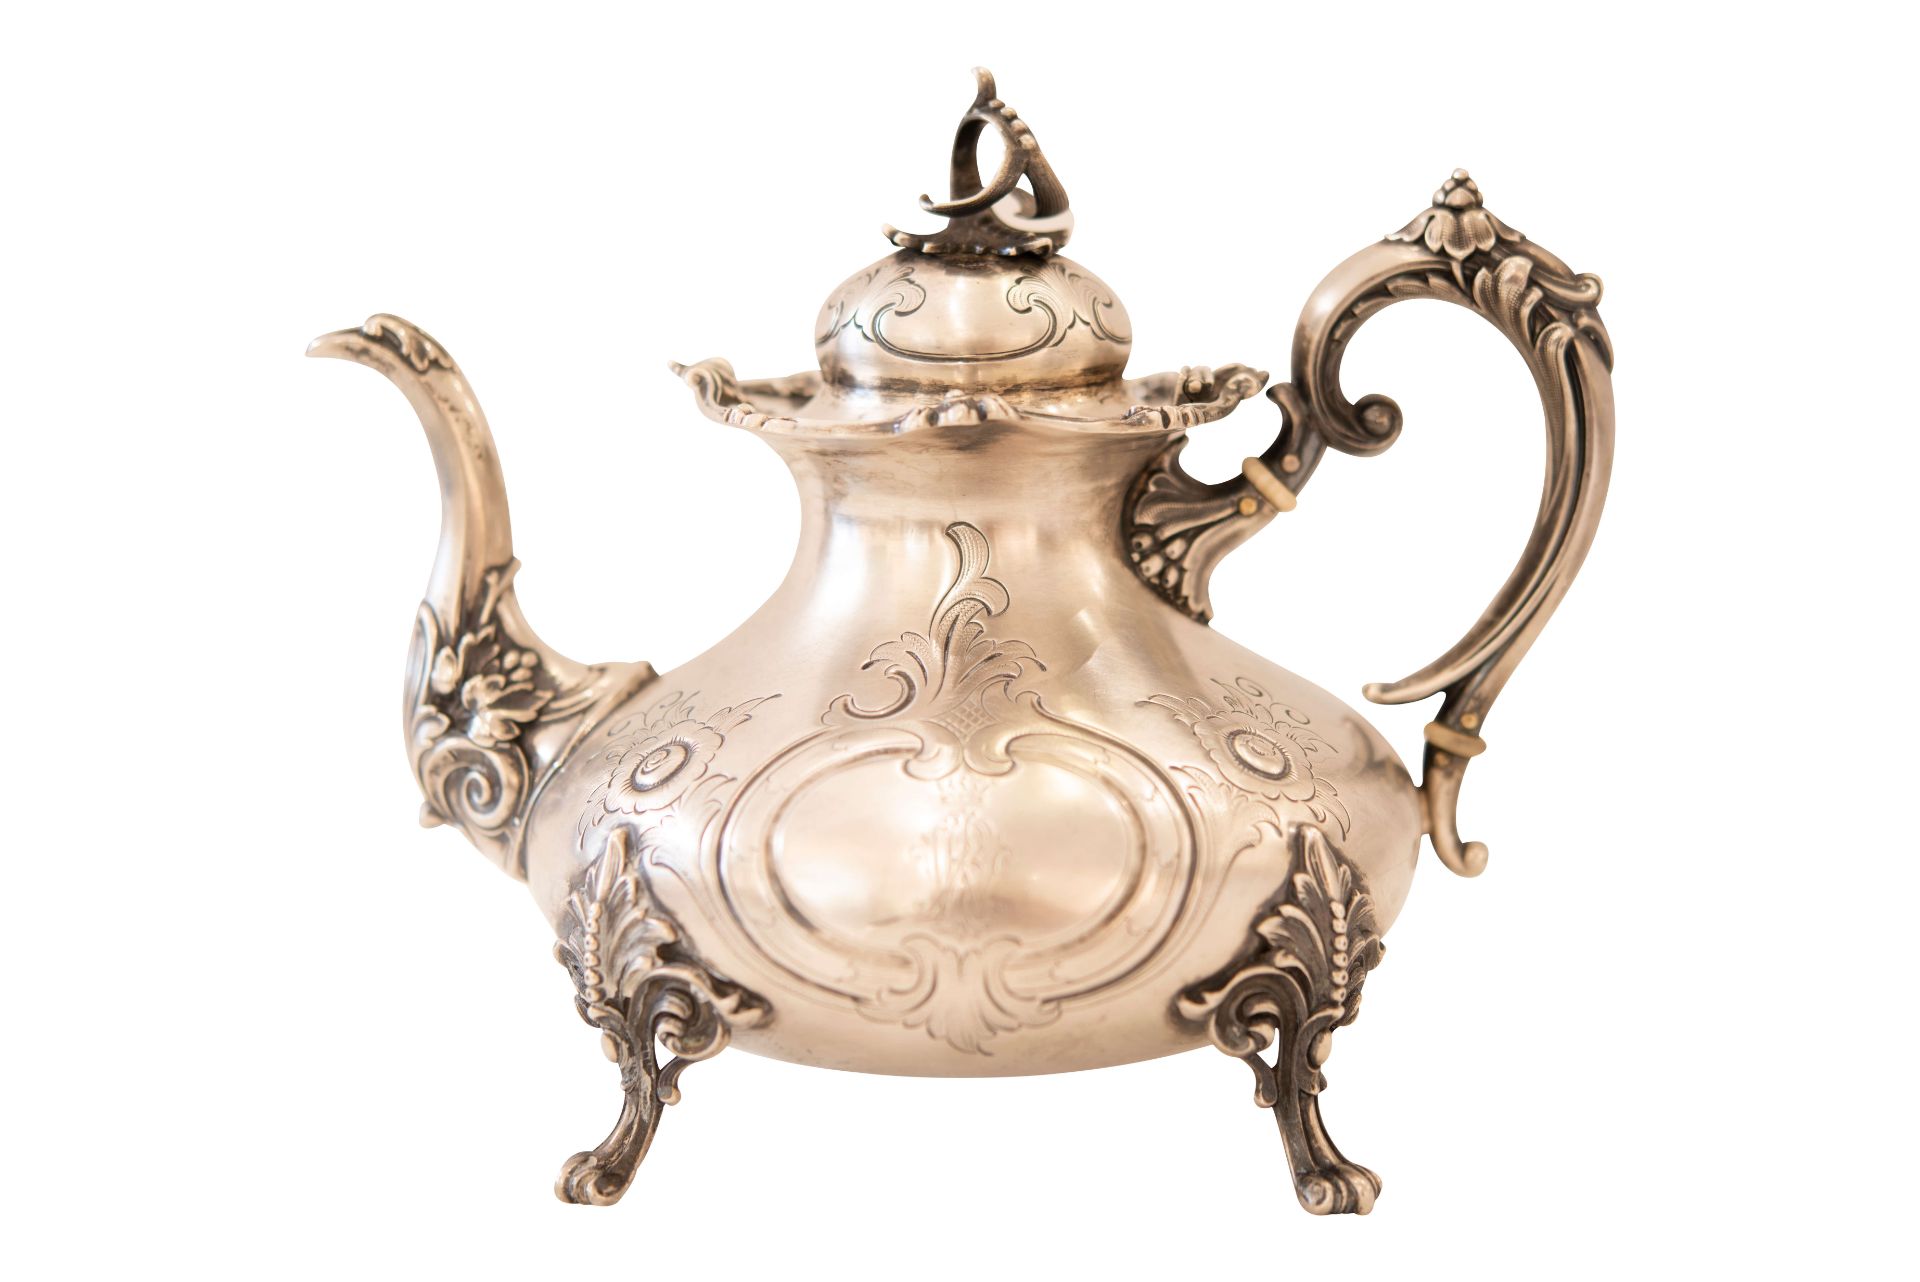 Silberteekanne mit vier Füßen |Silver Teapot with Four Feet